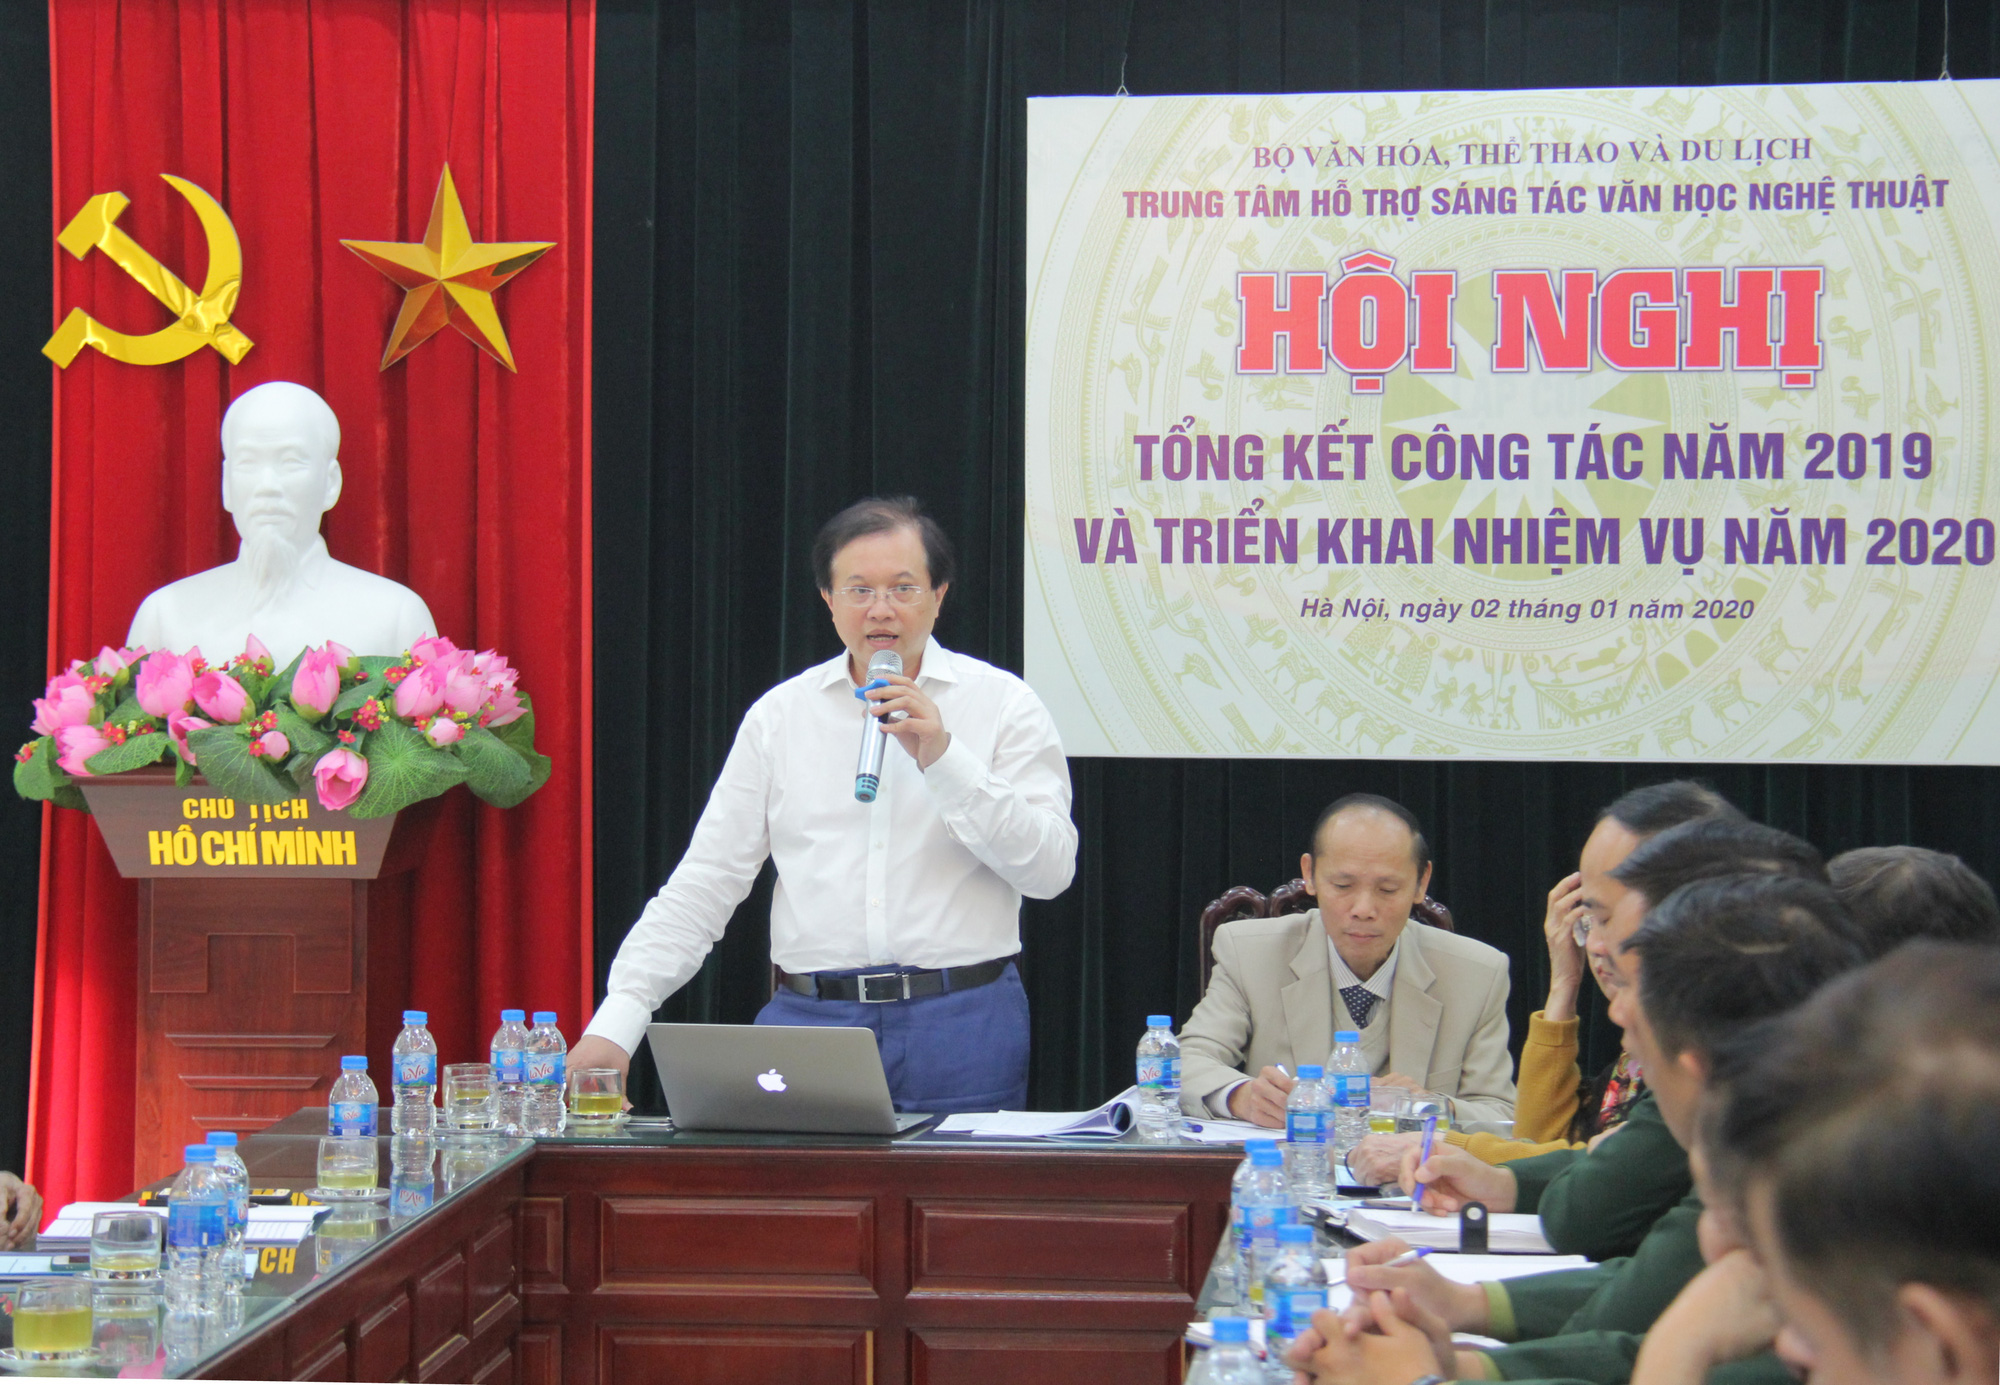 Thứ trưởng Tạ Quang Đông: Nâng cao chất lượng các trại sáng tác văn học nghệ thuật, góp phần làm giàu bản sắc văn hóa Việt Nam - Ảnh 1.